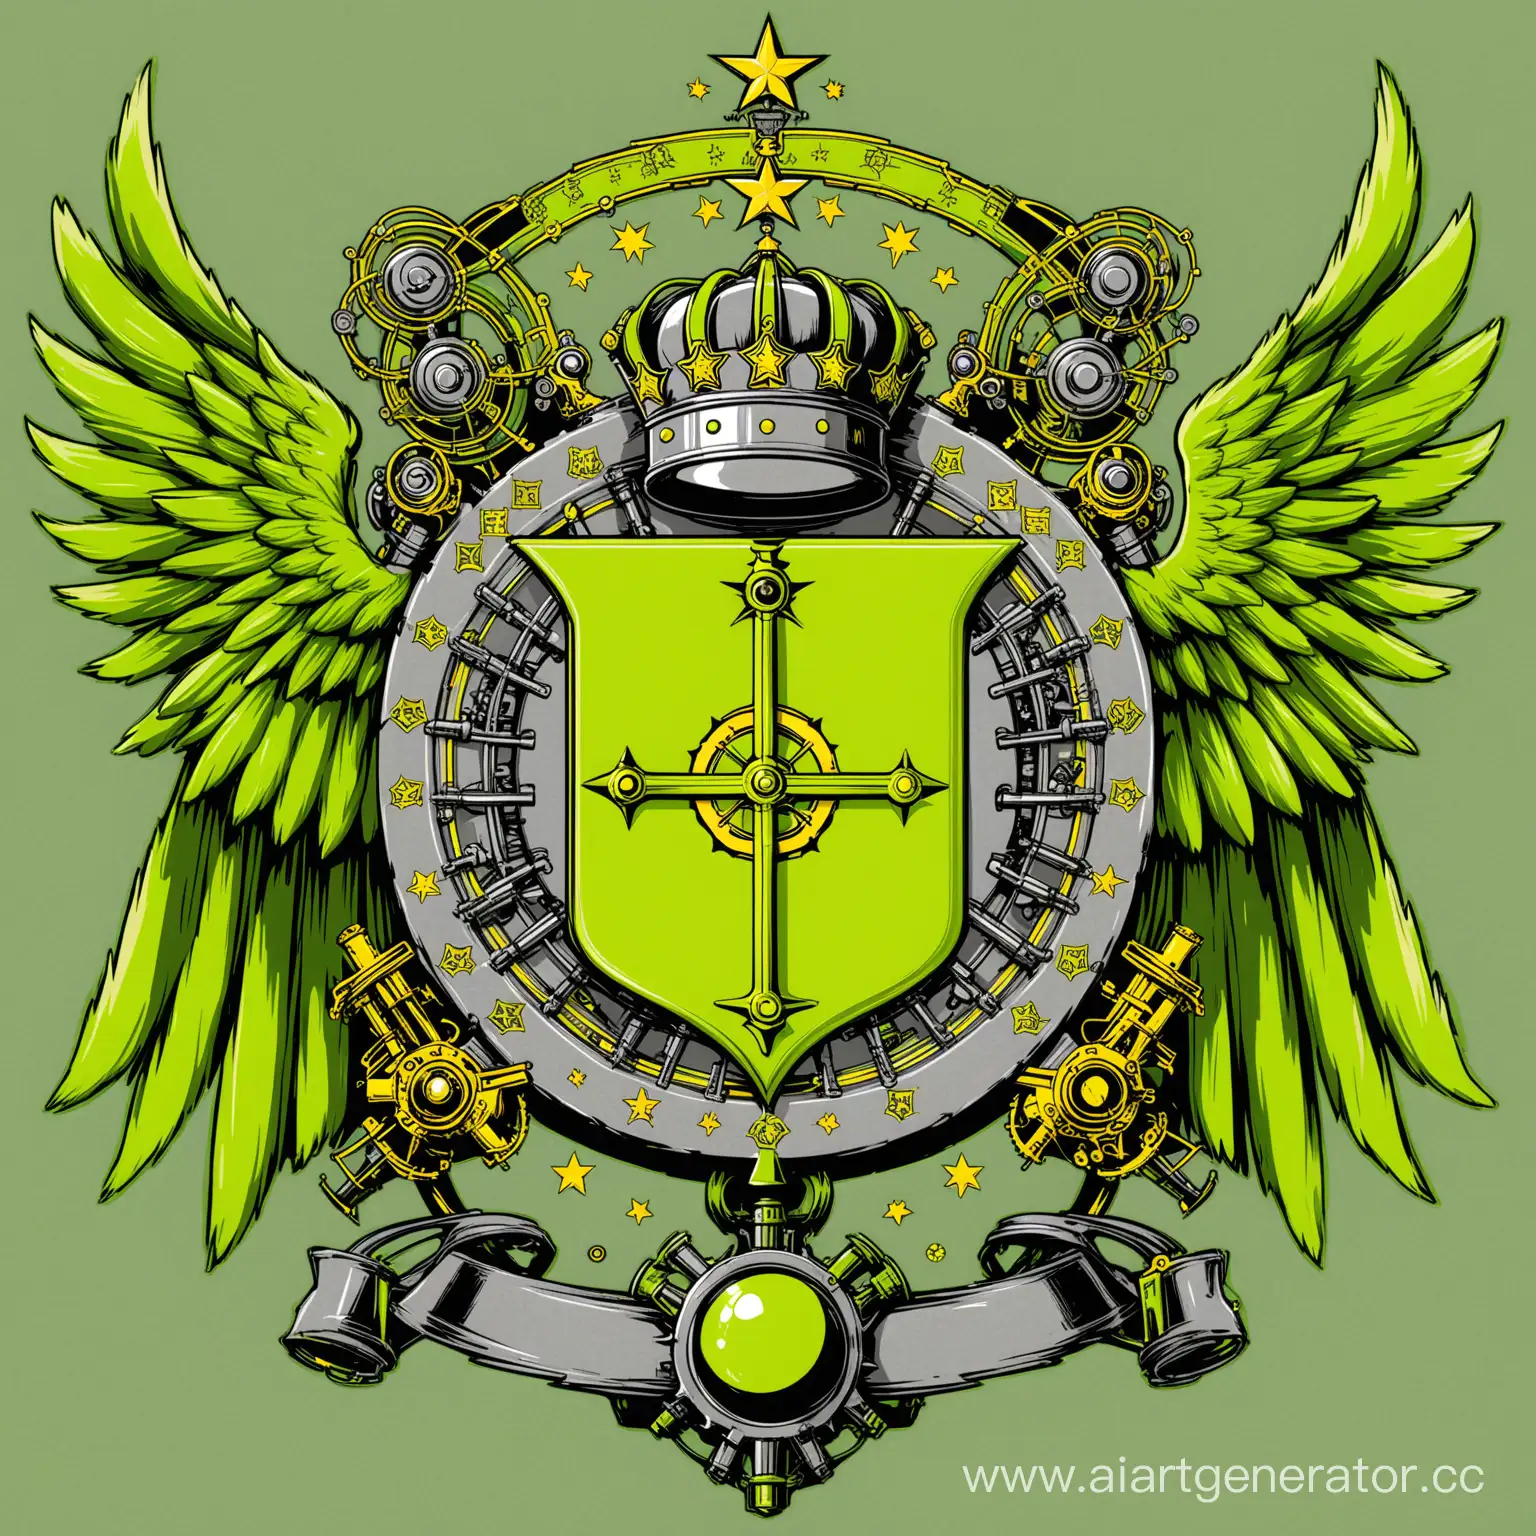 Герб Империи Эпсилон, Эпсилон выдуманная держава Короли Механизмов и Химии, нарисовать в тонах кислотно зелёного, механическо серого, жёлтого